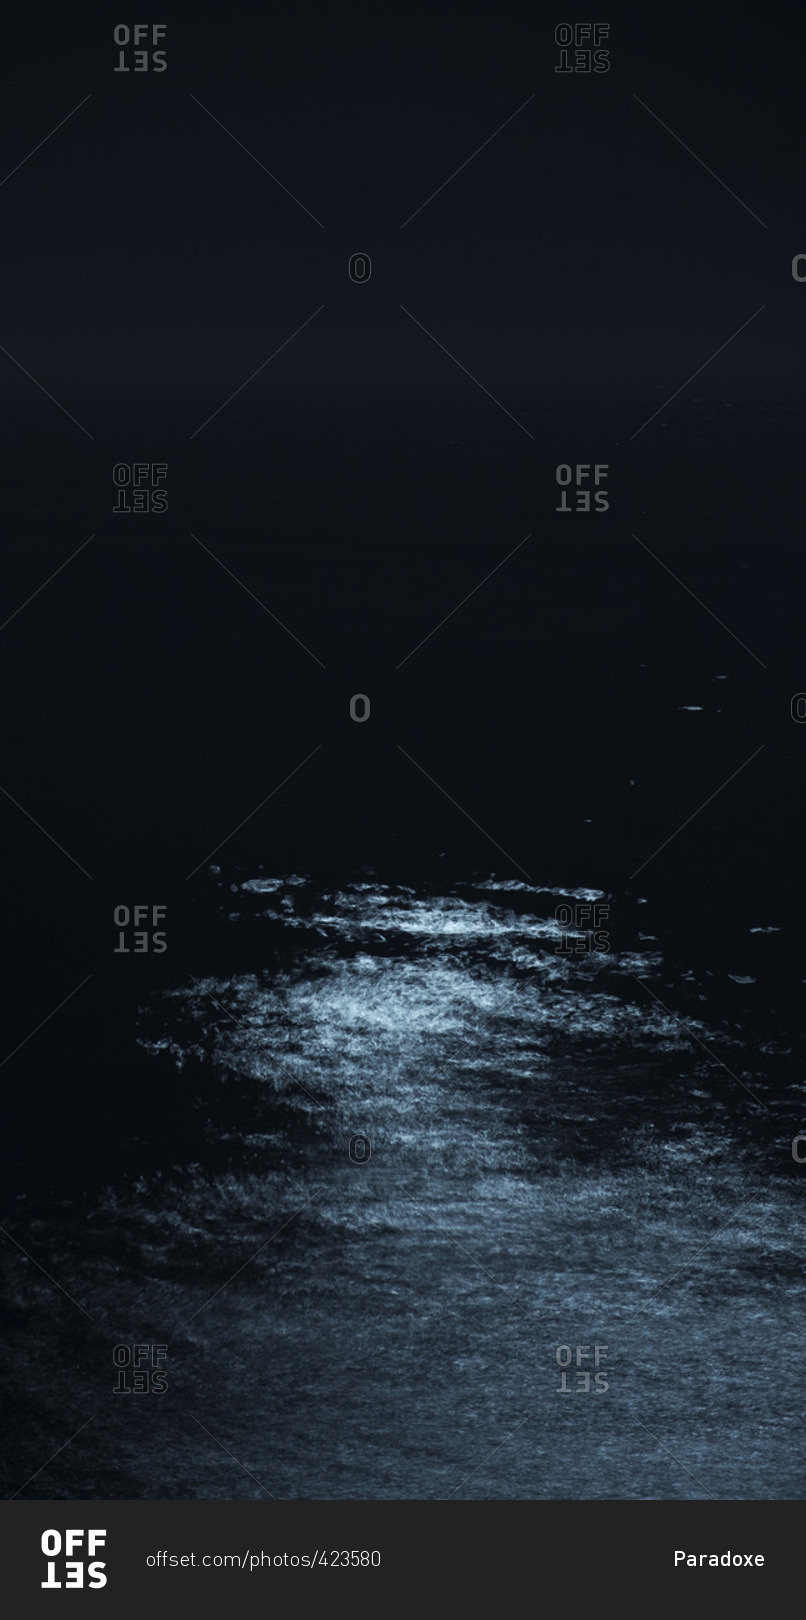 Moonlight reflected on ocean at night